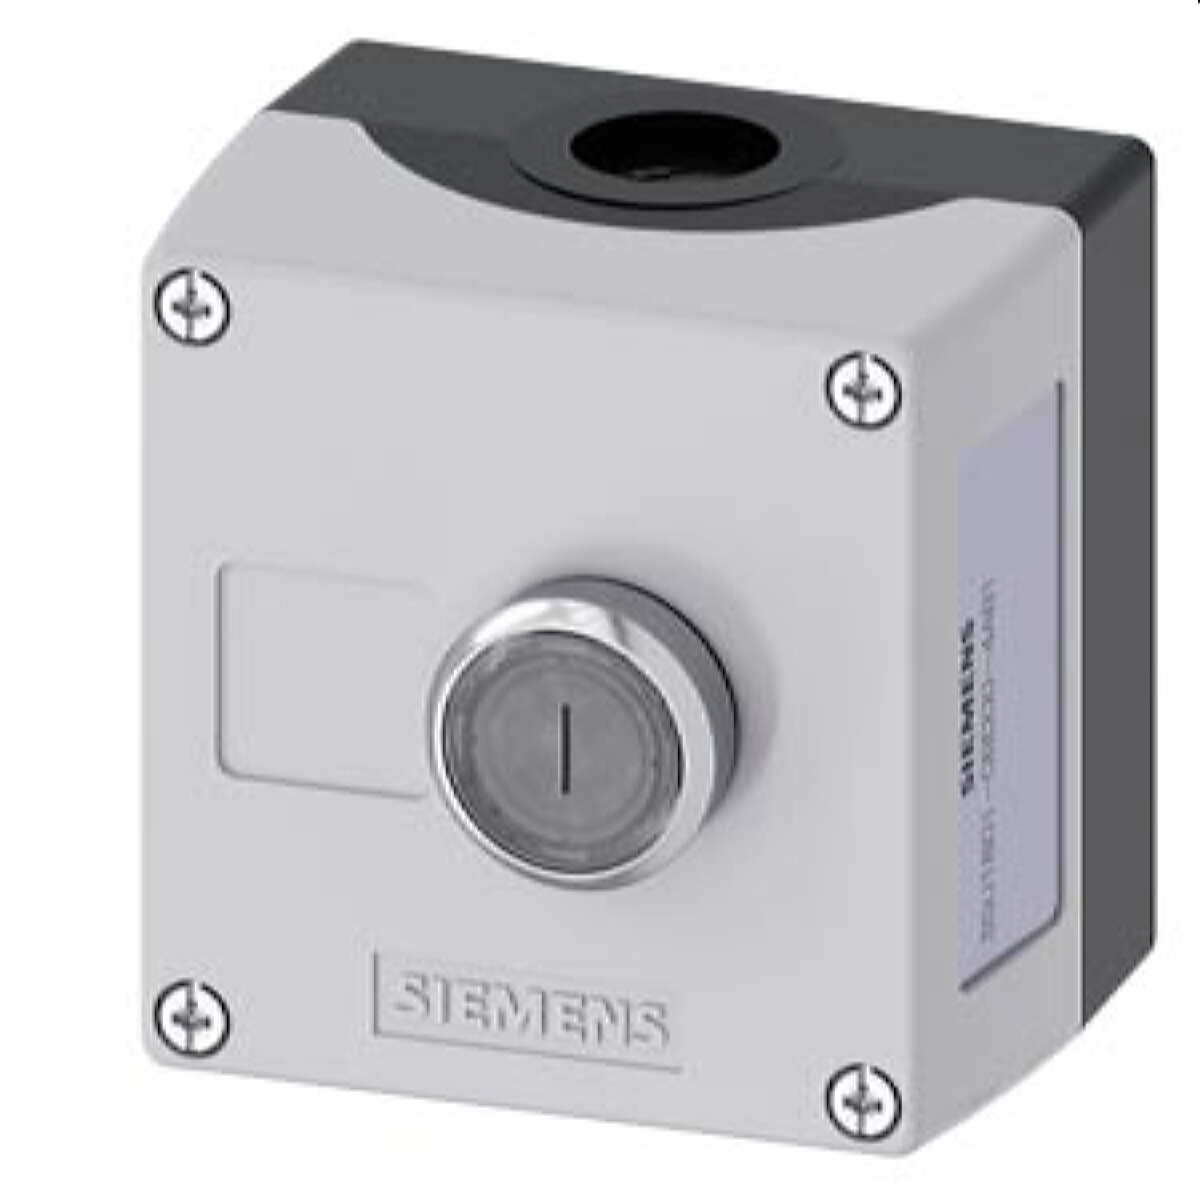 Siemens Gehäuse für Befehlsgeräte 22mm rund, 3SU1801-0BD00-4AB1